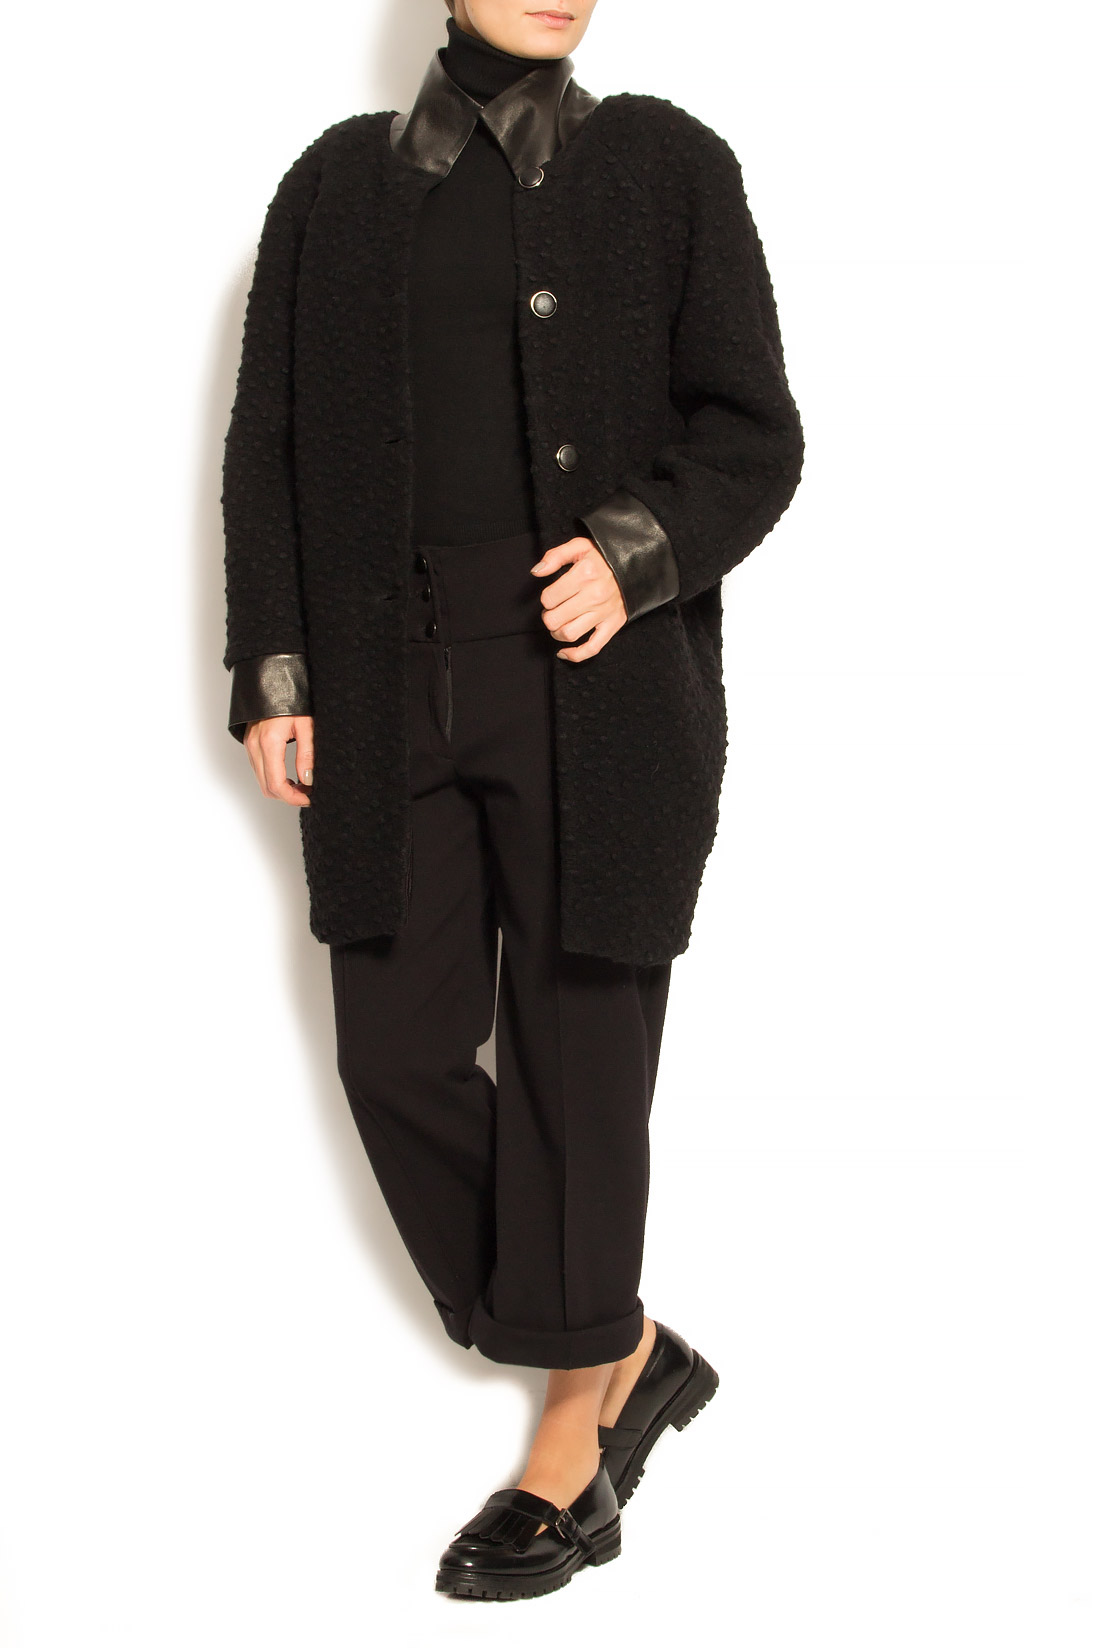 Palton din lana cu insertii din piele ecologica Elena Perseil imagine 3